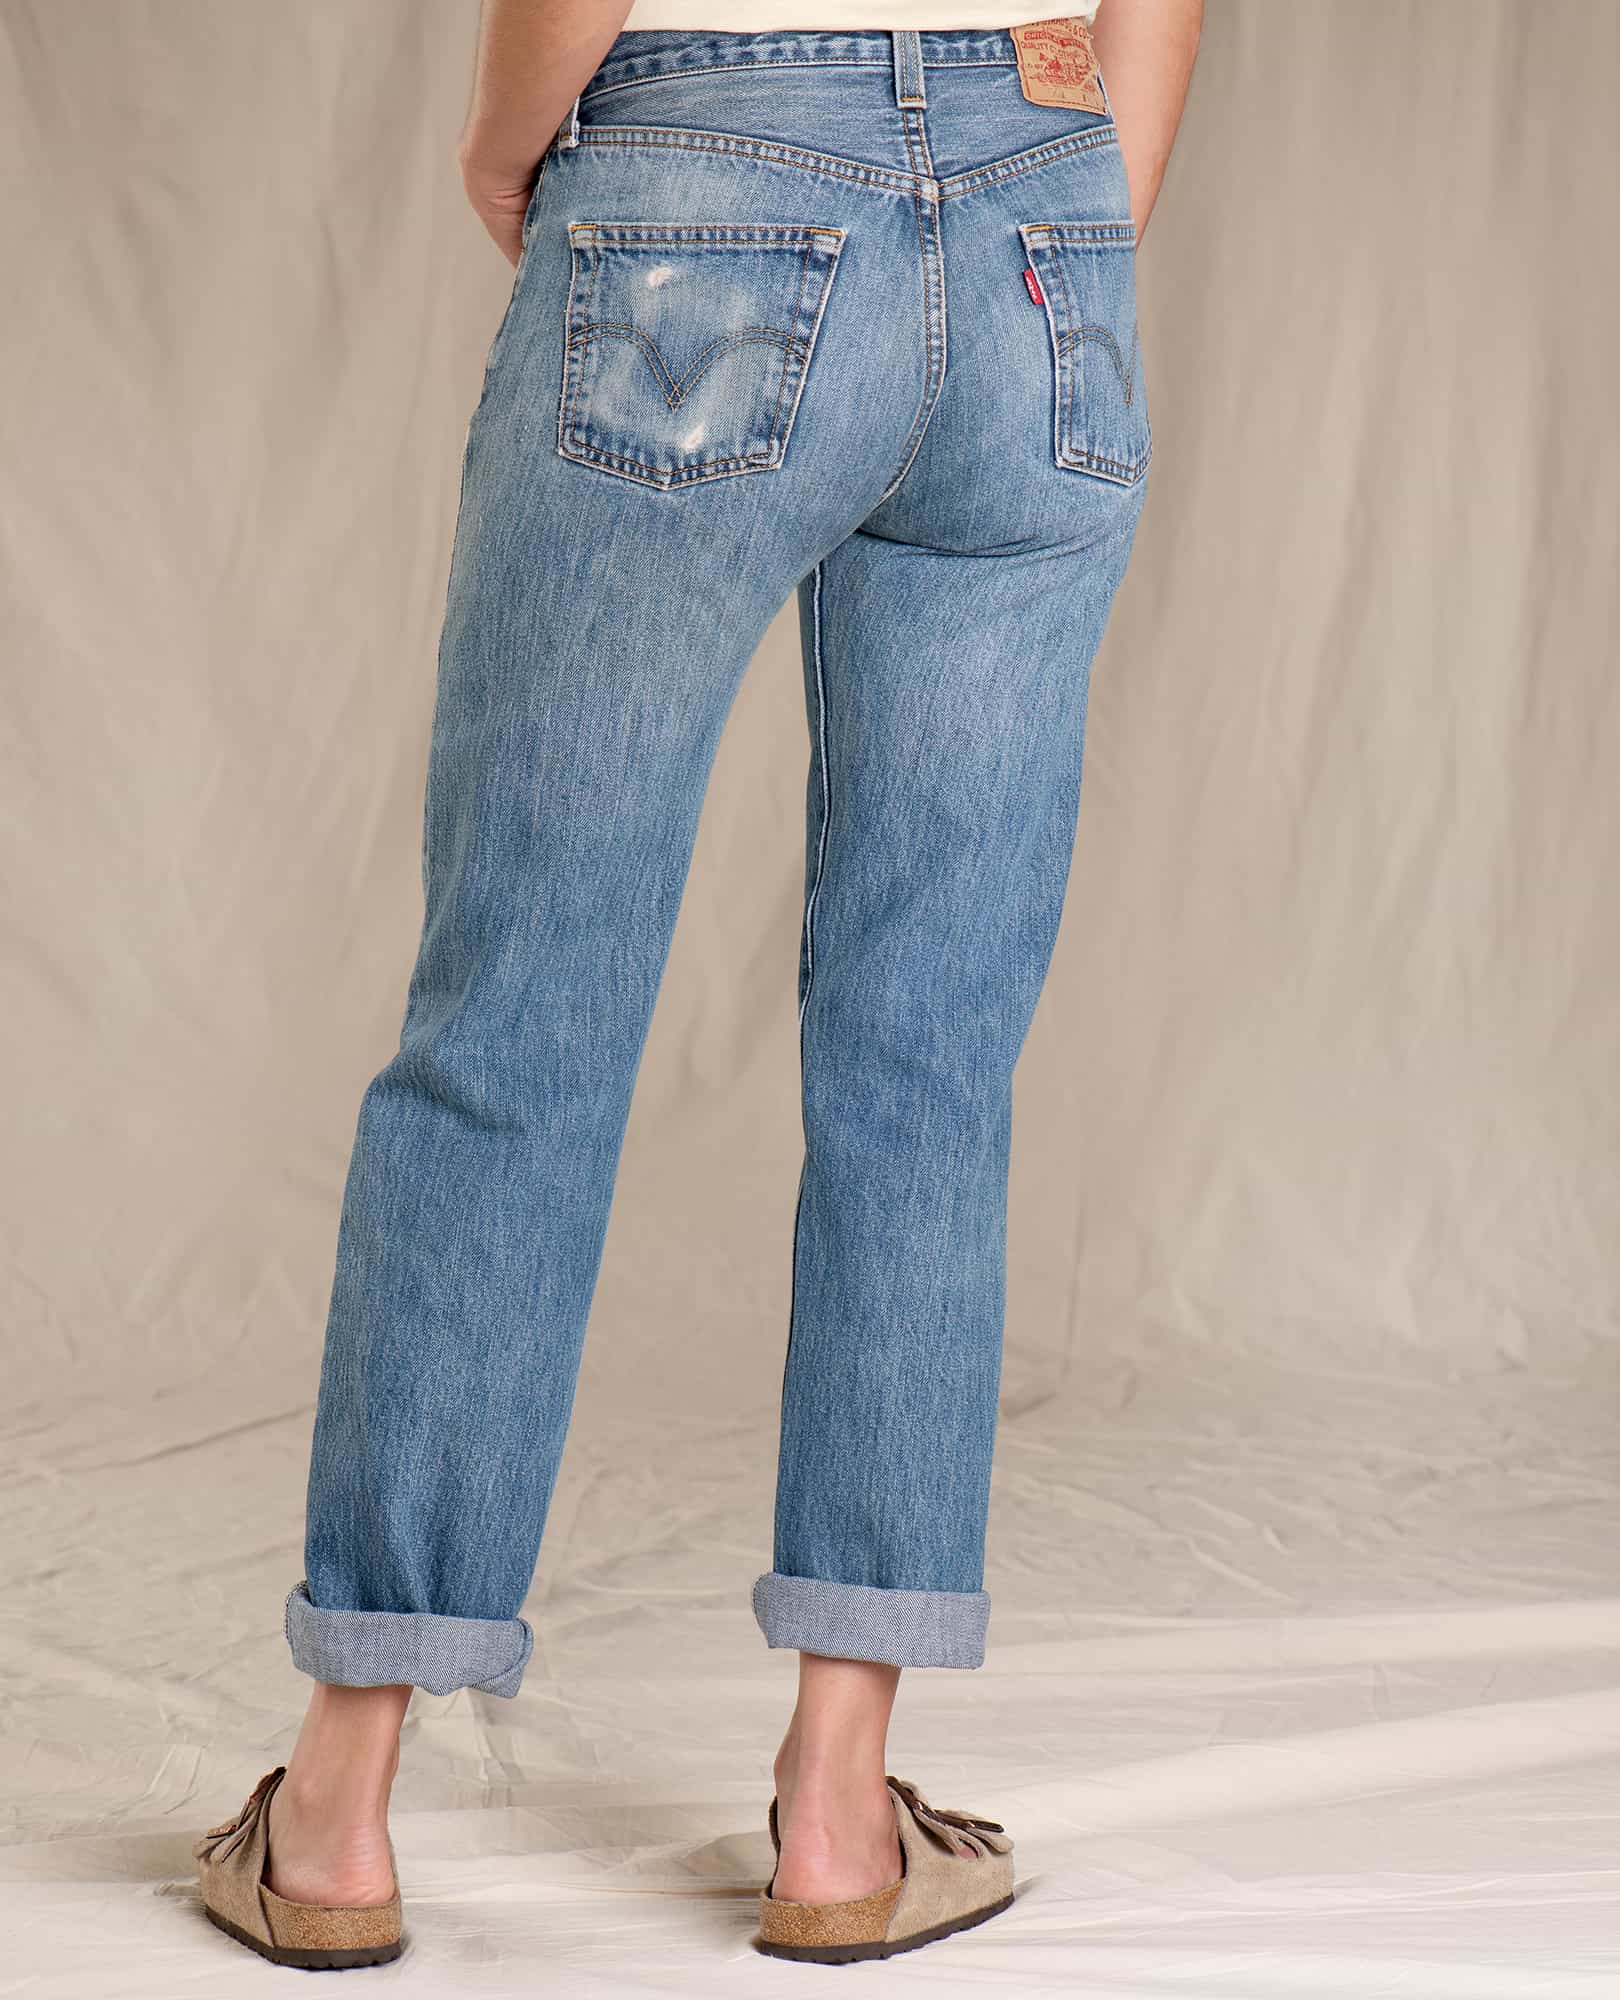 levis vintage jeans womens